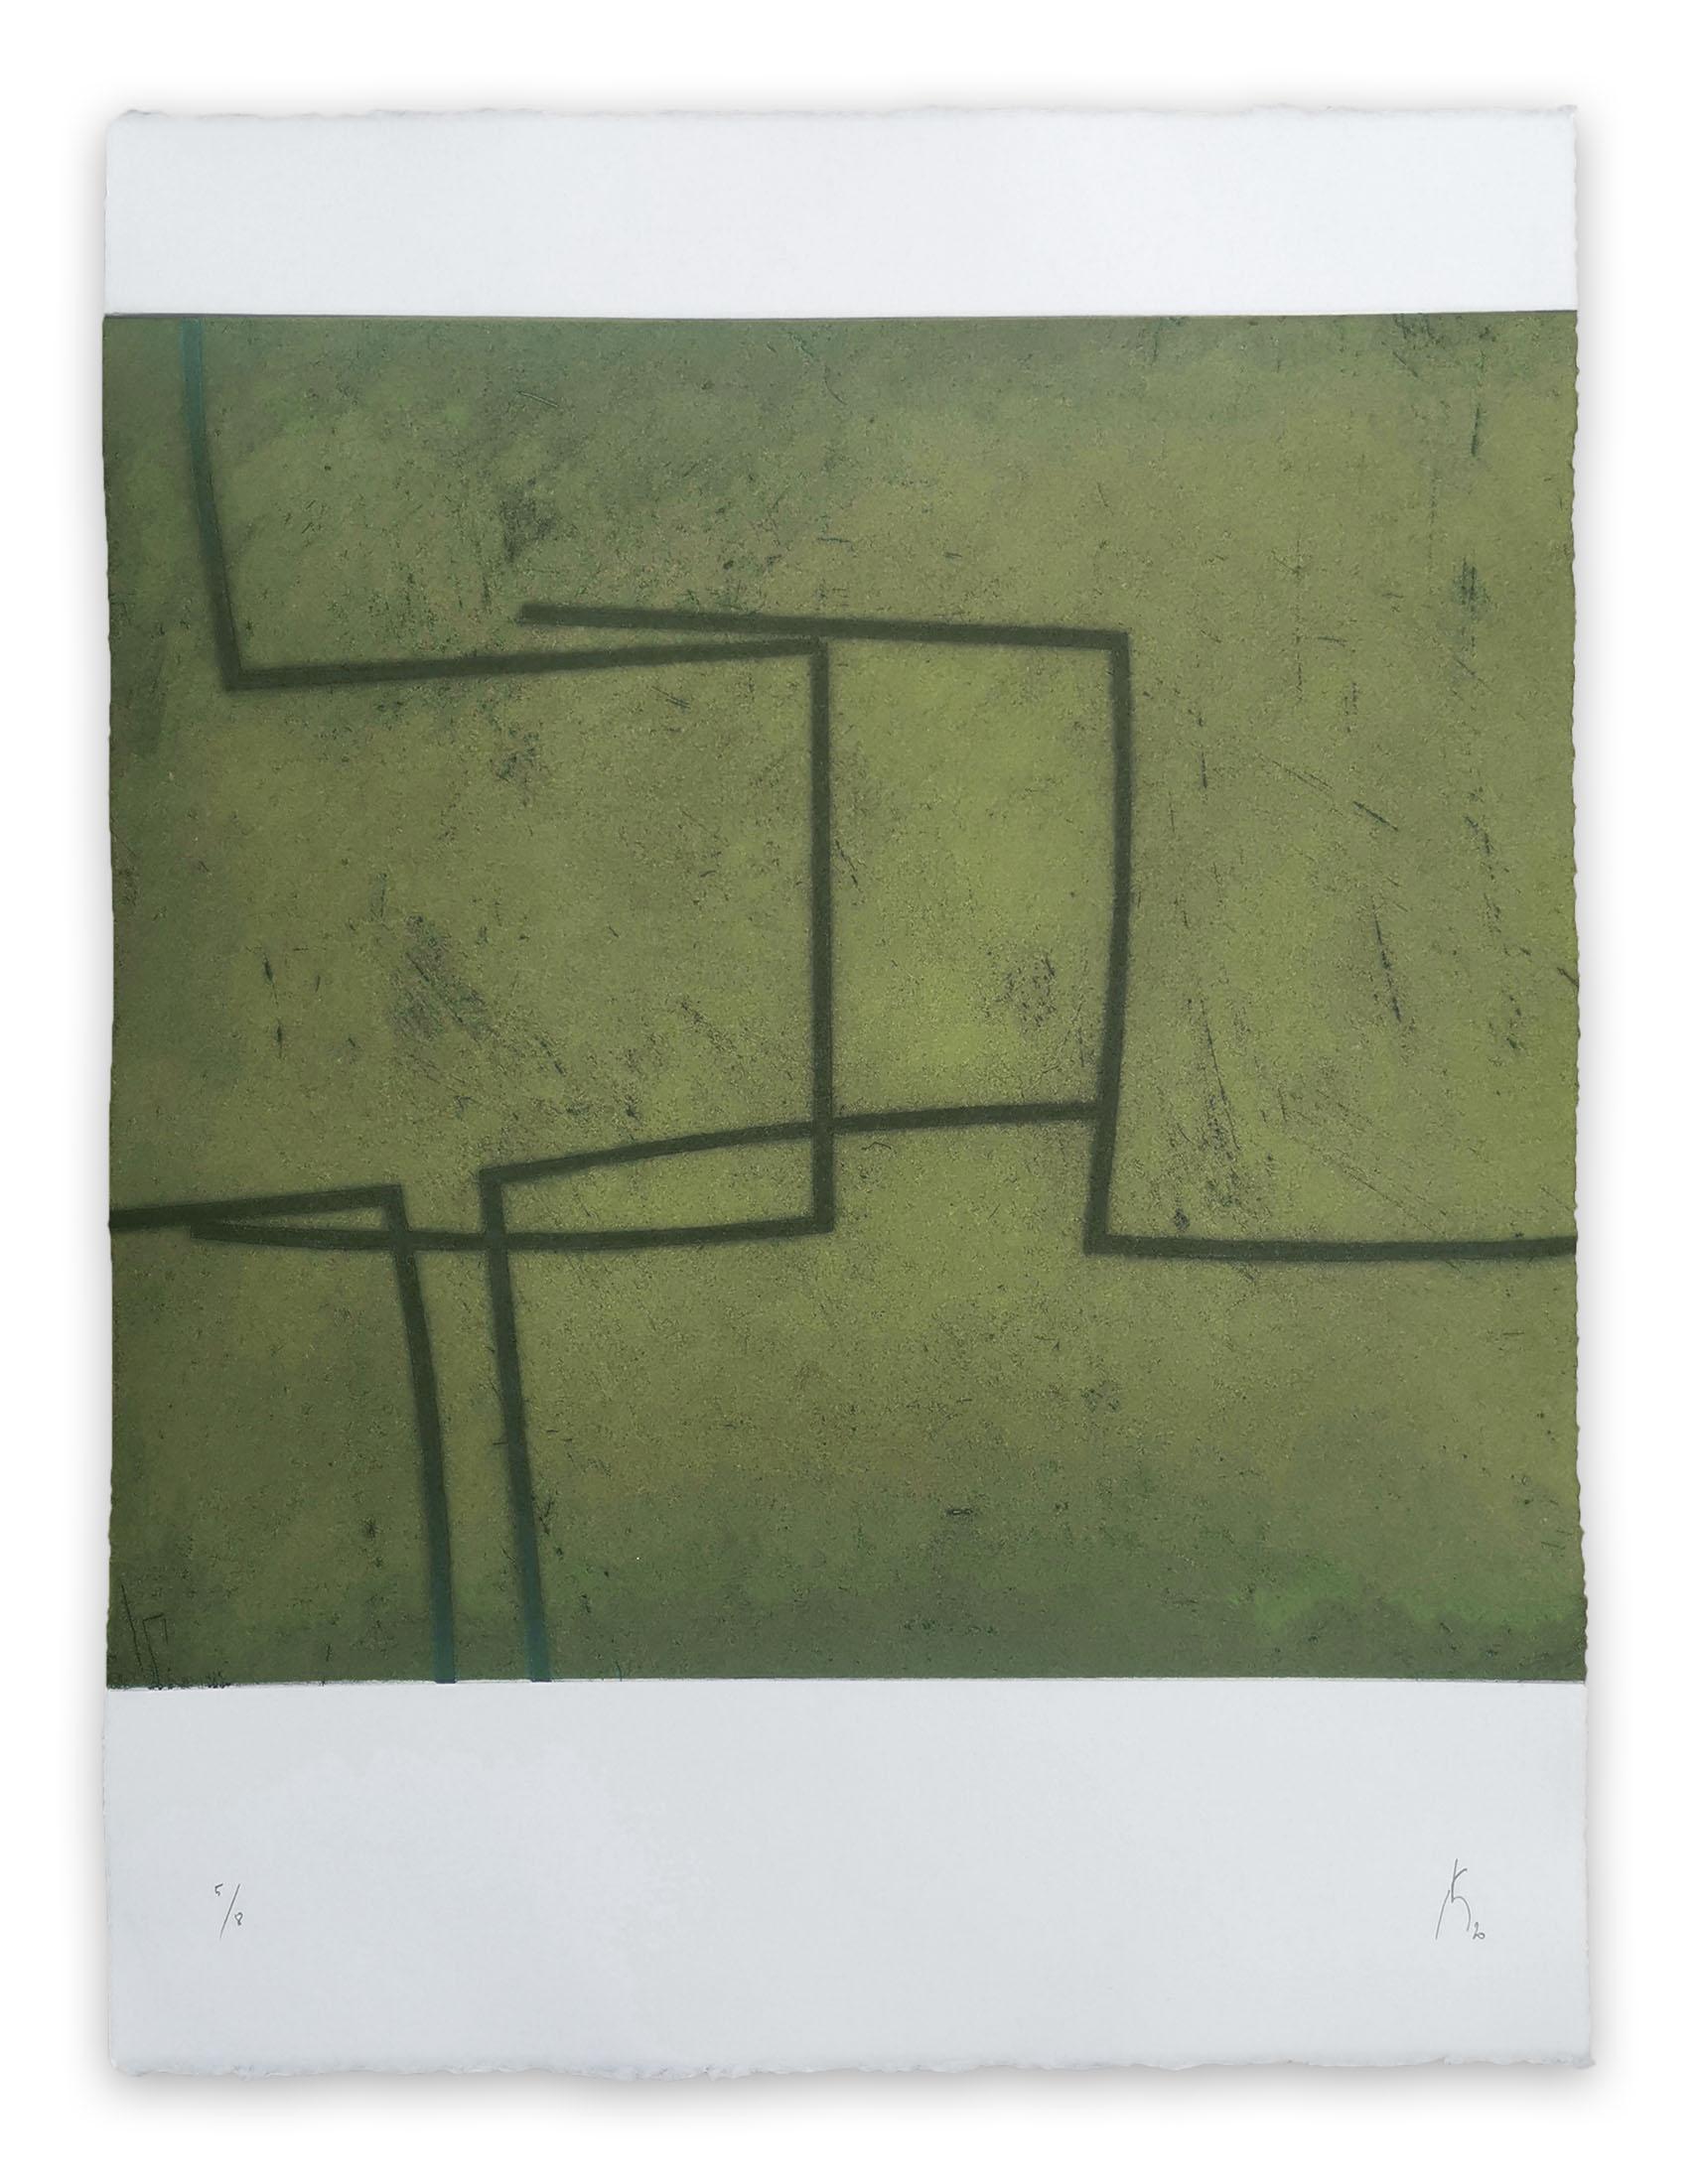 Pierre Muckensturm Abstract Print - 203R0946